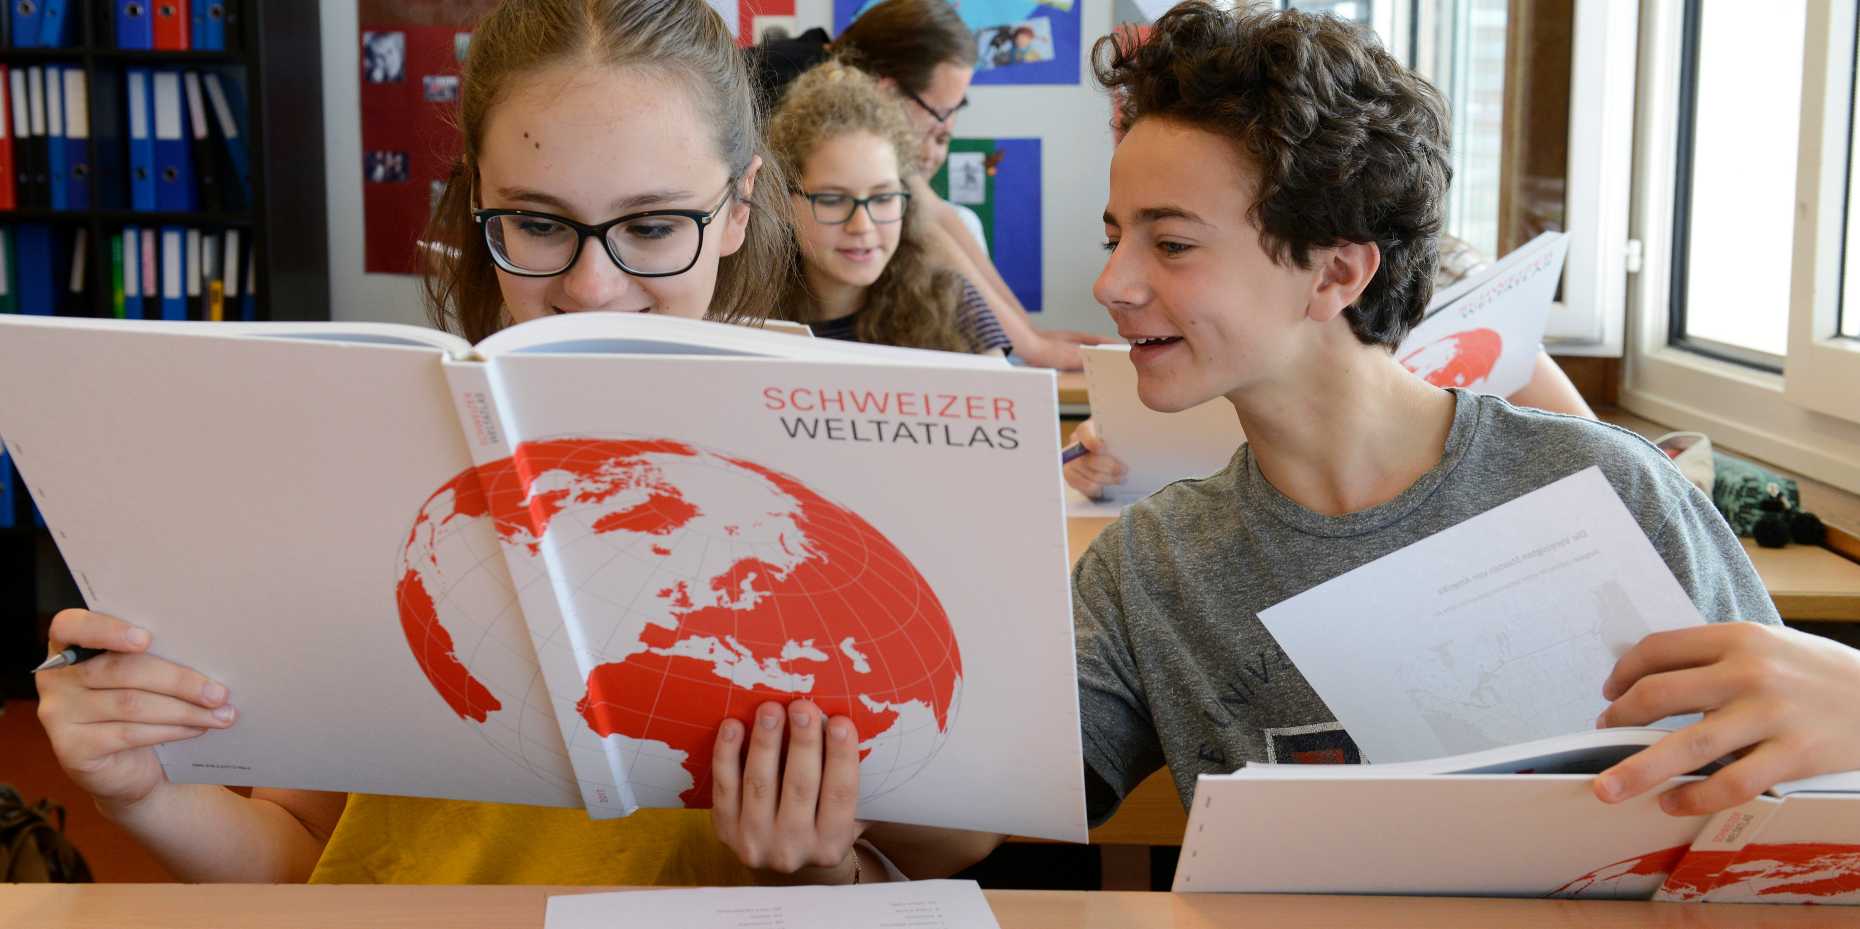 Schüler blättern im neuen Schweizer Weltlatlas